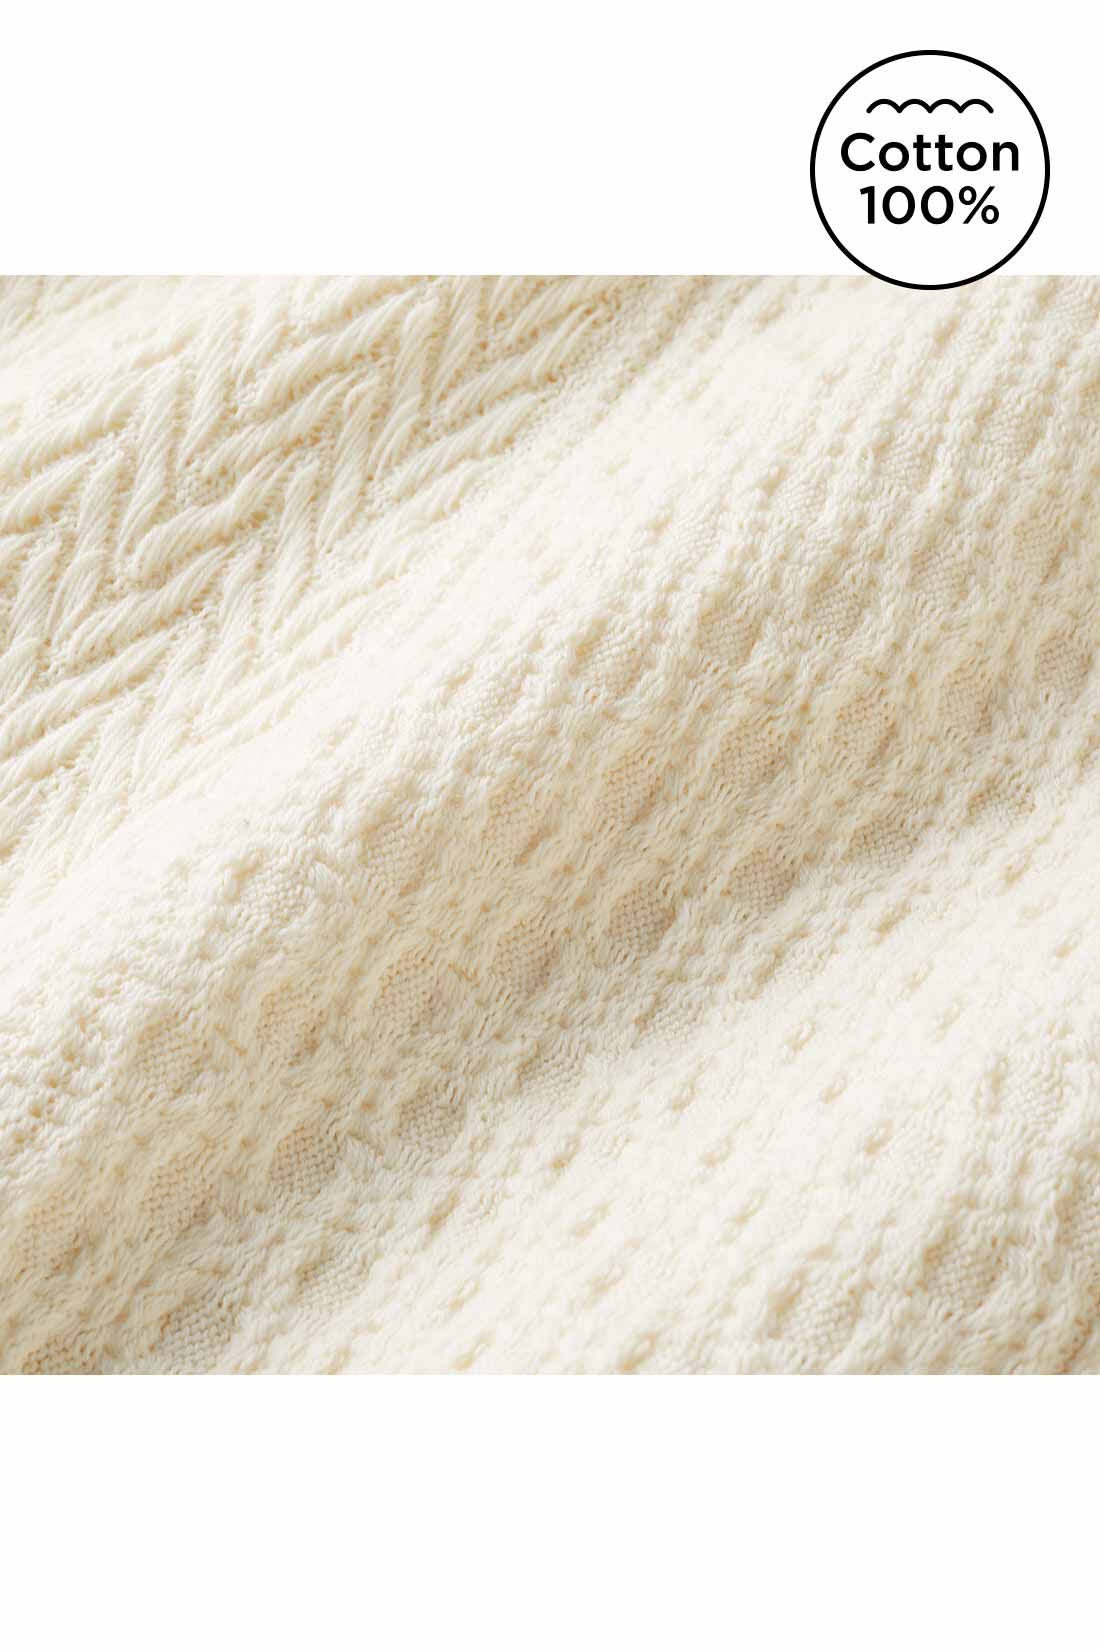 Real Stock|Live love cottonプロジェクト　リブ イン コンフォート　編み柄が素敵なオーガニックコットンロングスカート〈アイボリー〉|ニット見えするジャカード編みの、薄くてやわらかいカットソー素材。